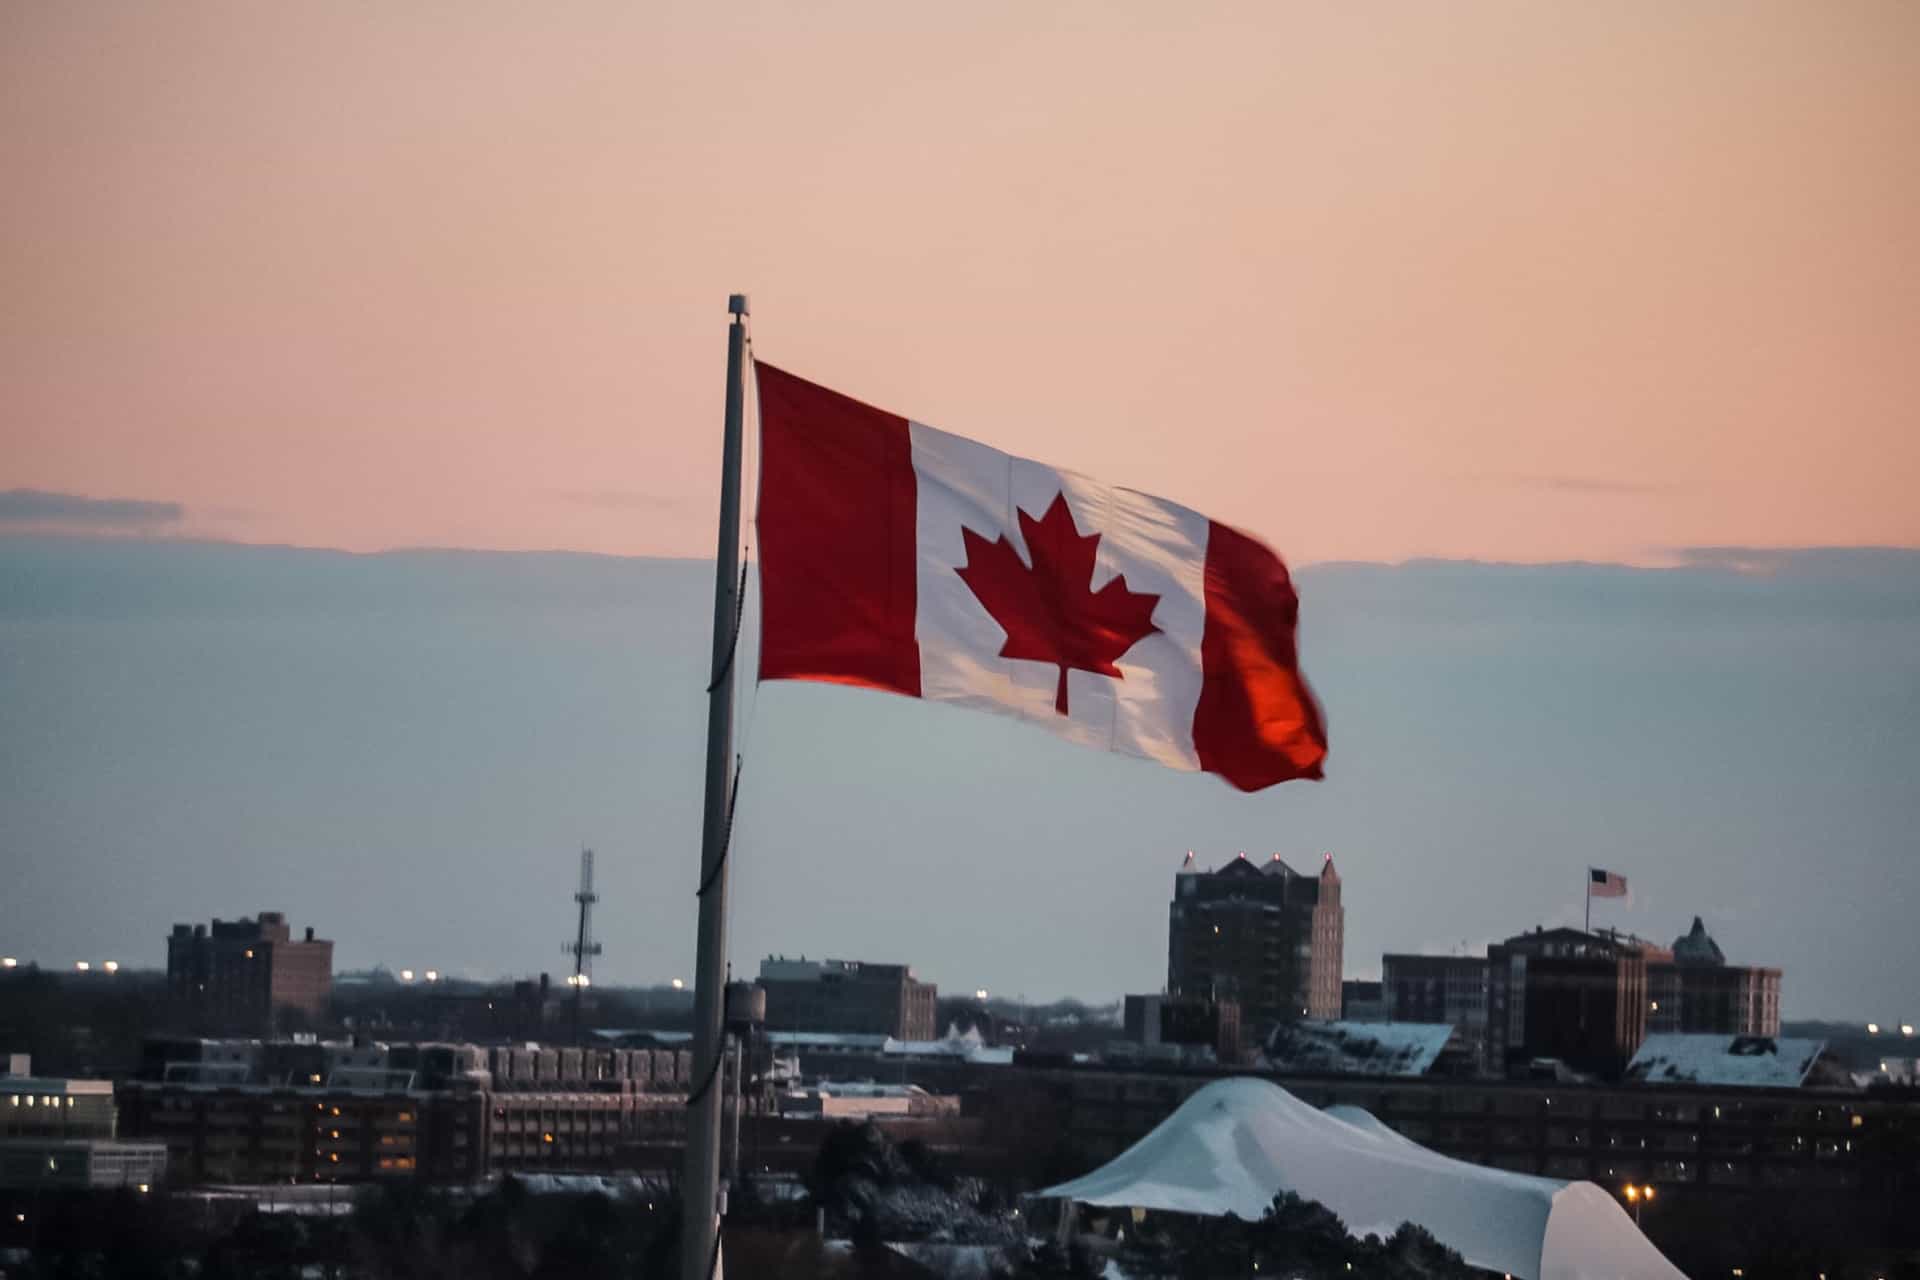 Bendera nasional Kanada, menampilkan warna merah dan putih yang ikonik dan Daun Maple, berkibar tinggi di atas kota di negara tersebut.